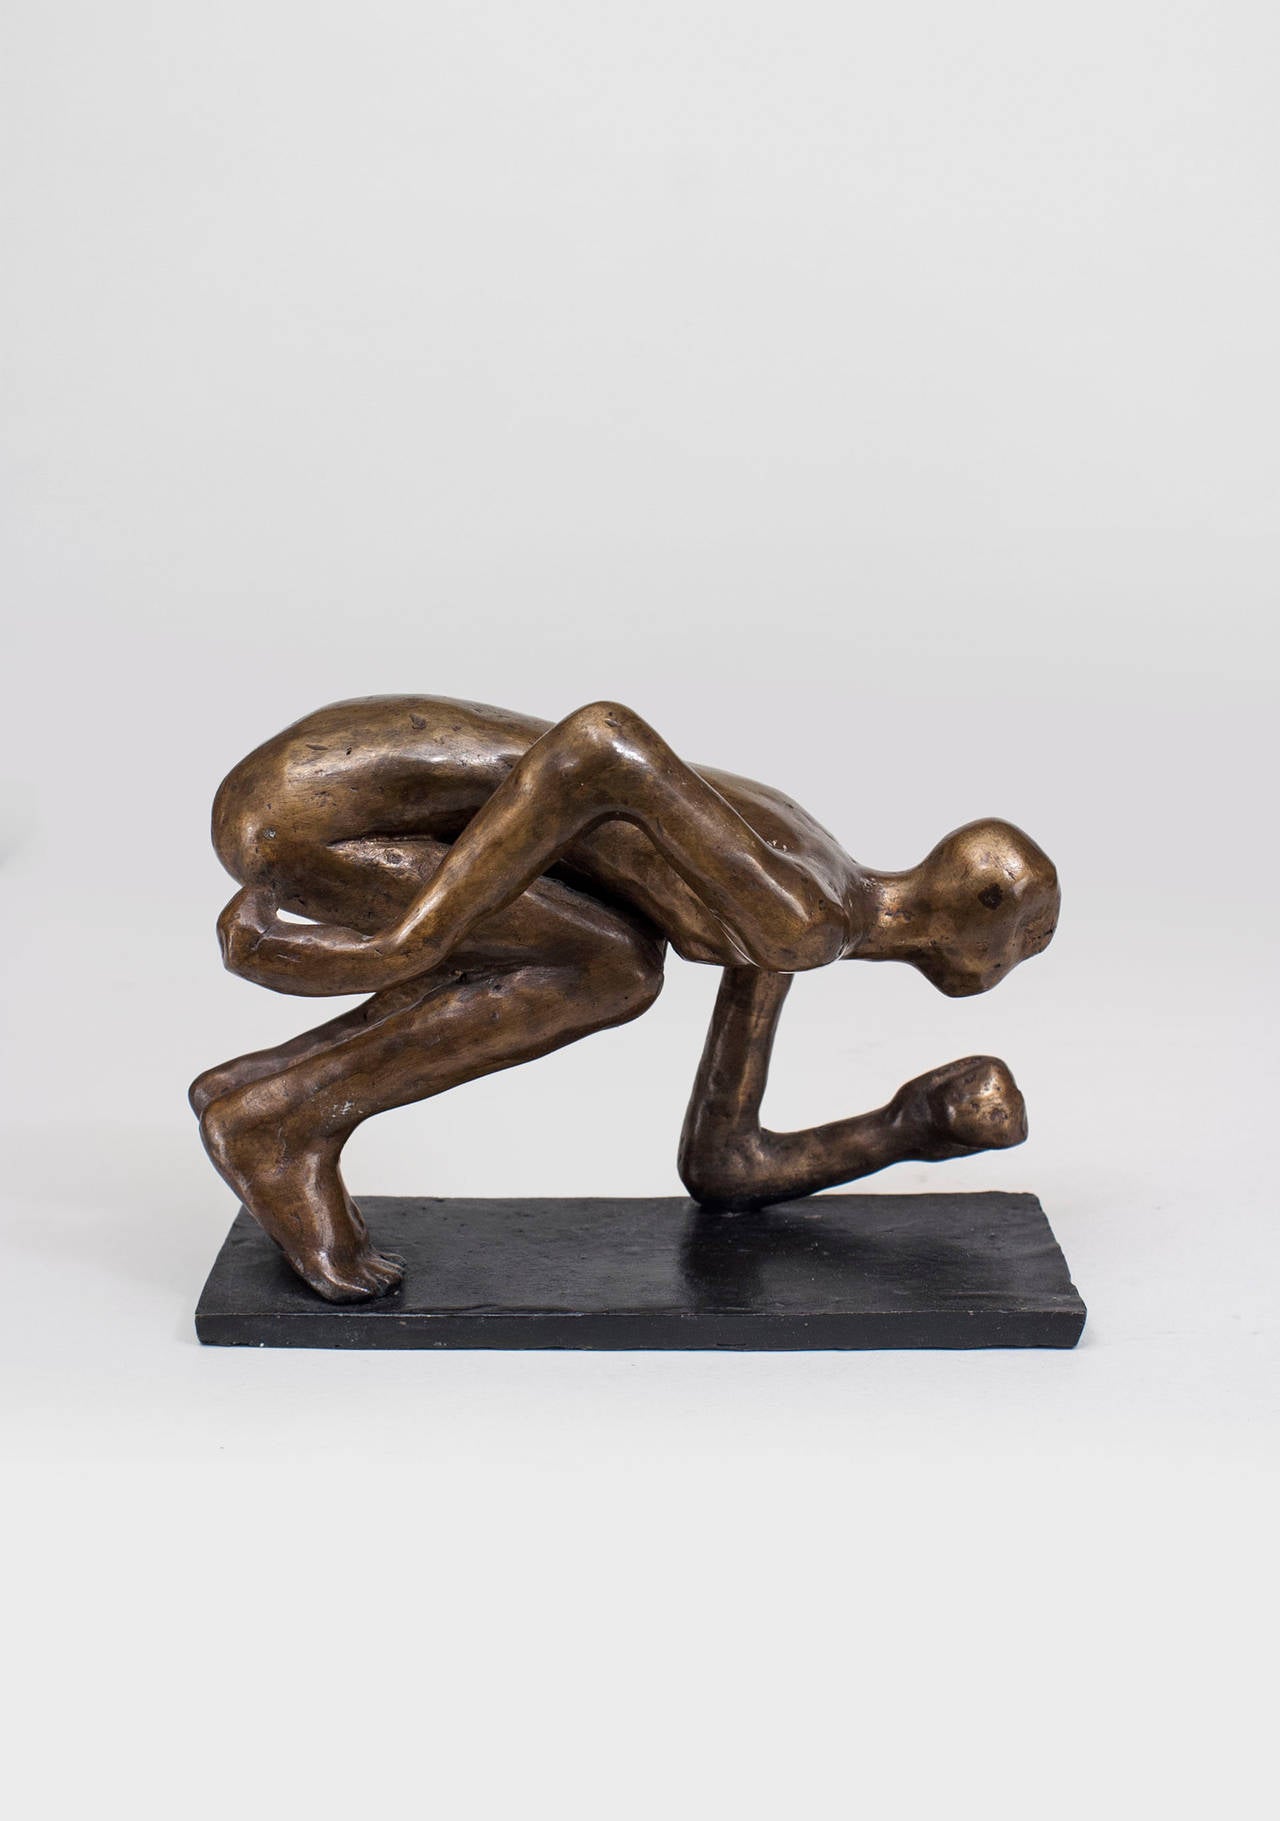 Sculpture en bronze de conception post-moderne américaine représentant un personnage agenouillé, les bras baissés, sur une base rectangulaire étroite (signée : CAROL BRUNS, 2003)
